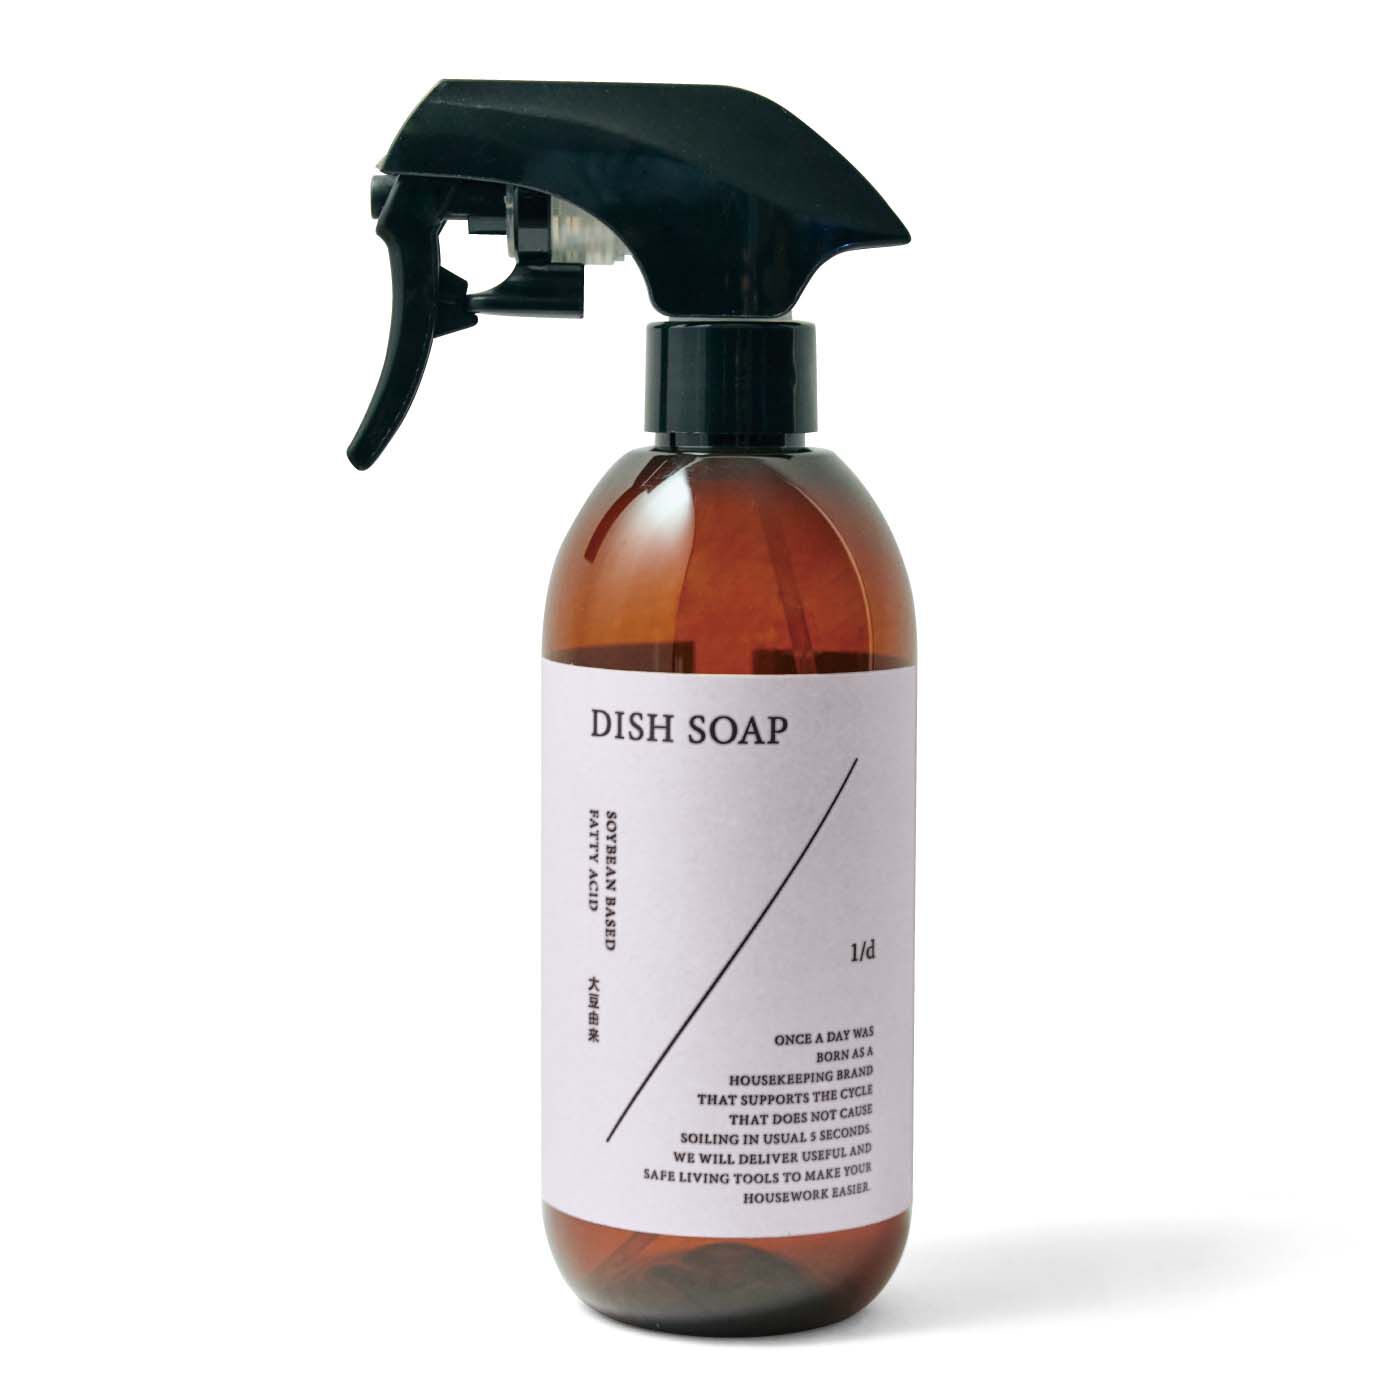 フェリシモの雑貨 Kraso|1/d DISH SOAP ディスペンサー|ワンスアデイDISH SOAP食器用洗剤を薄めて入れてください。